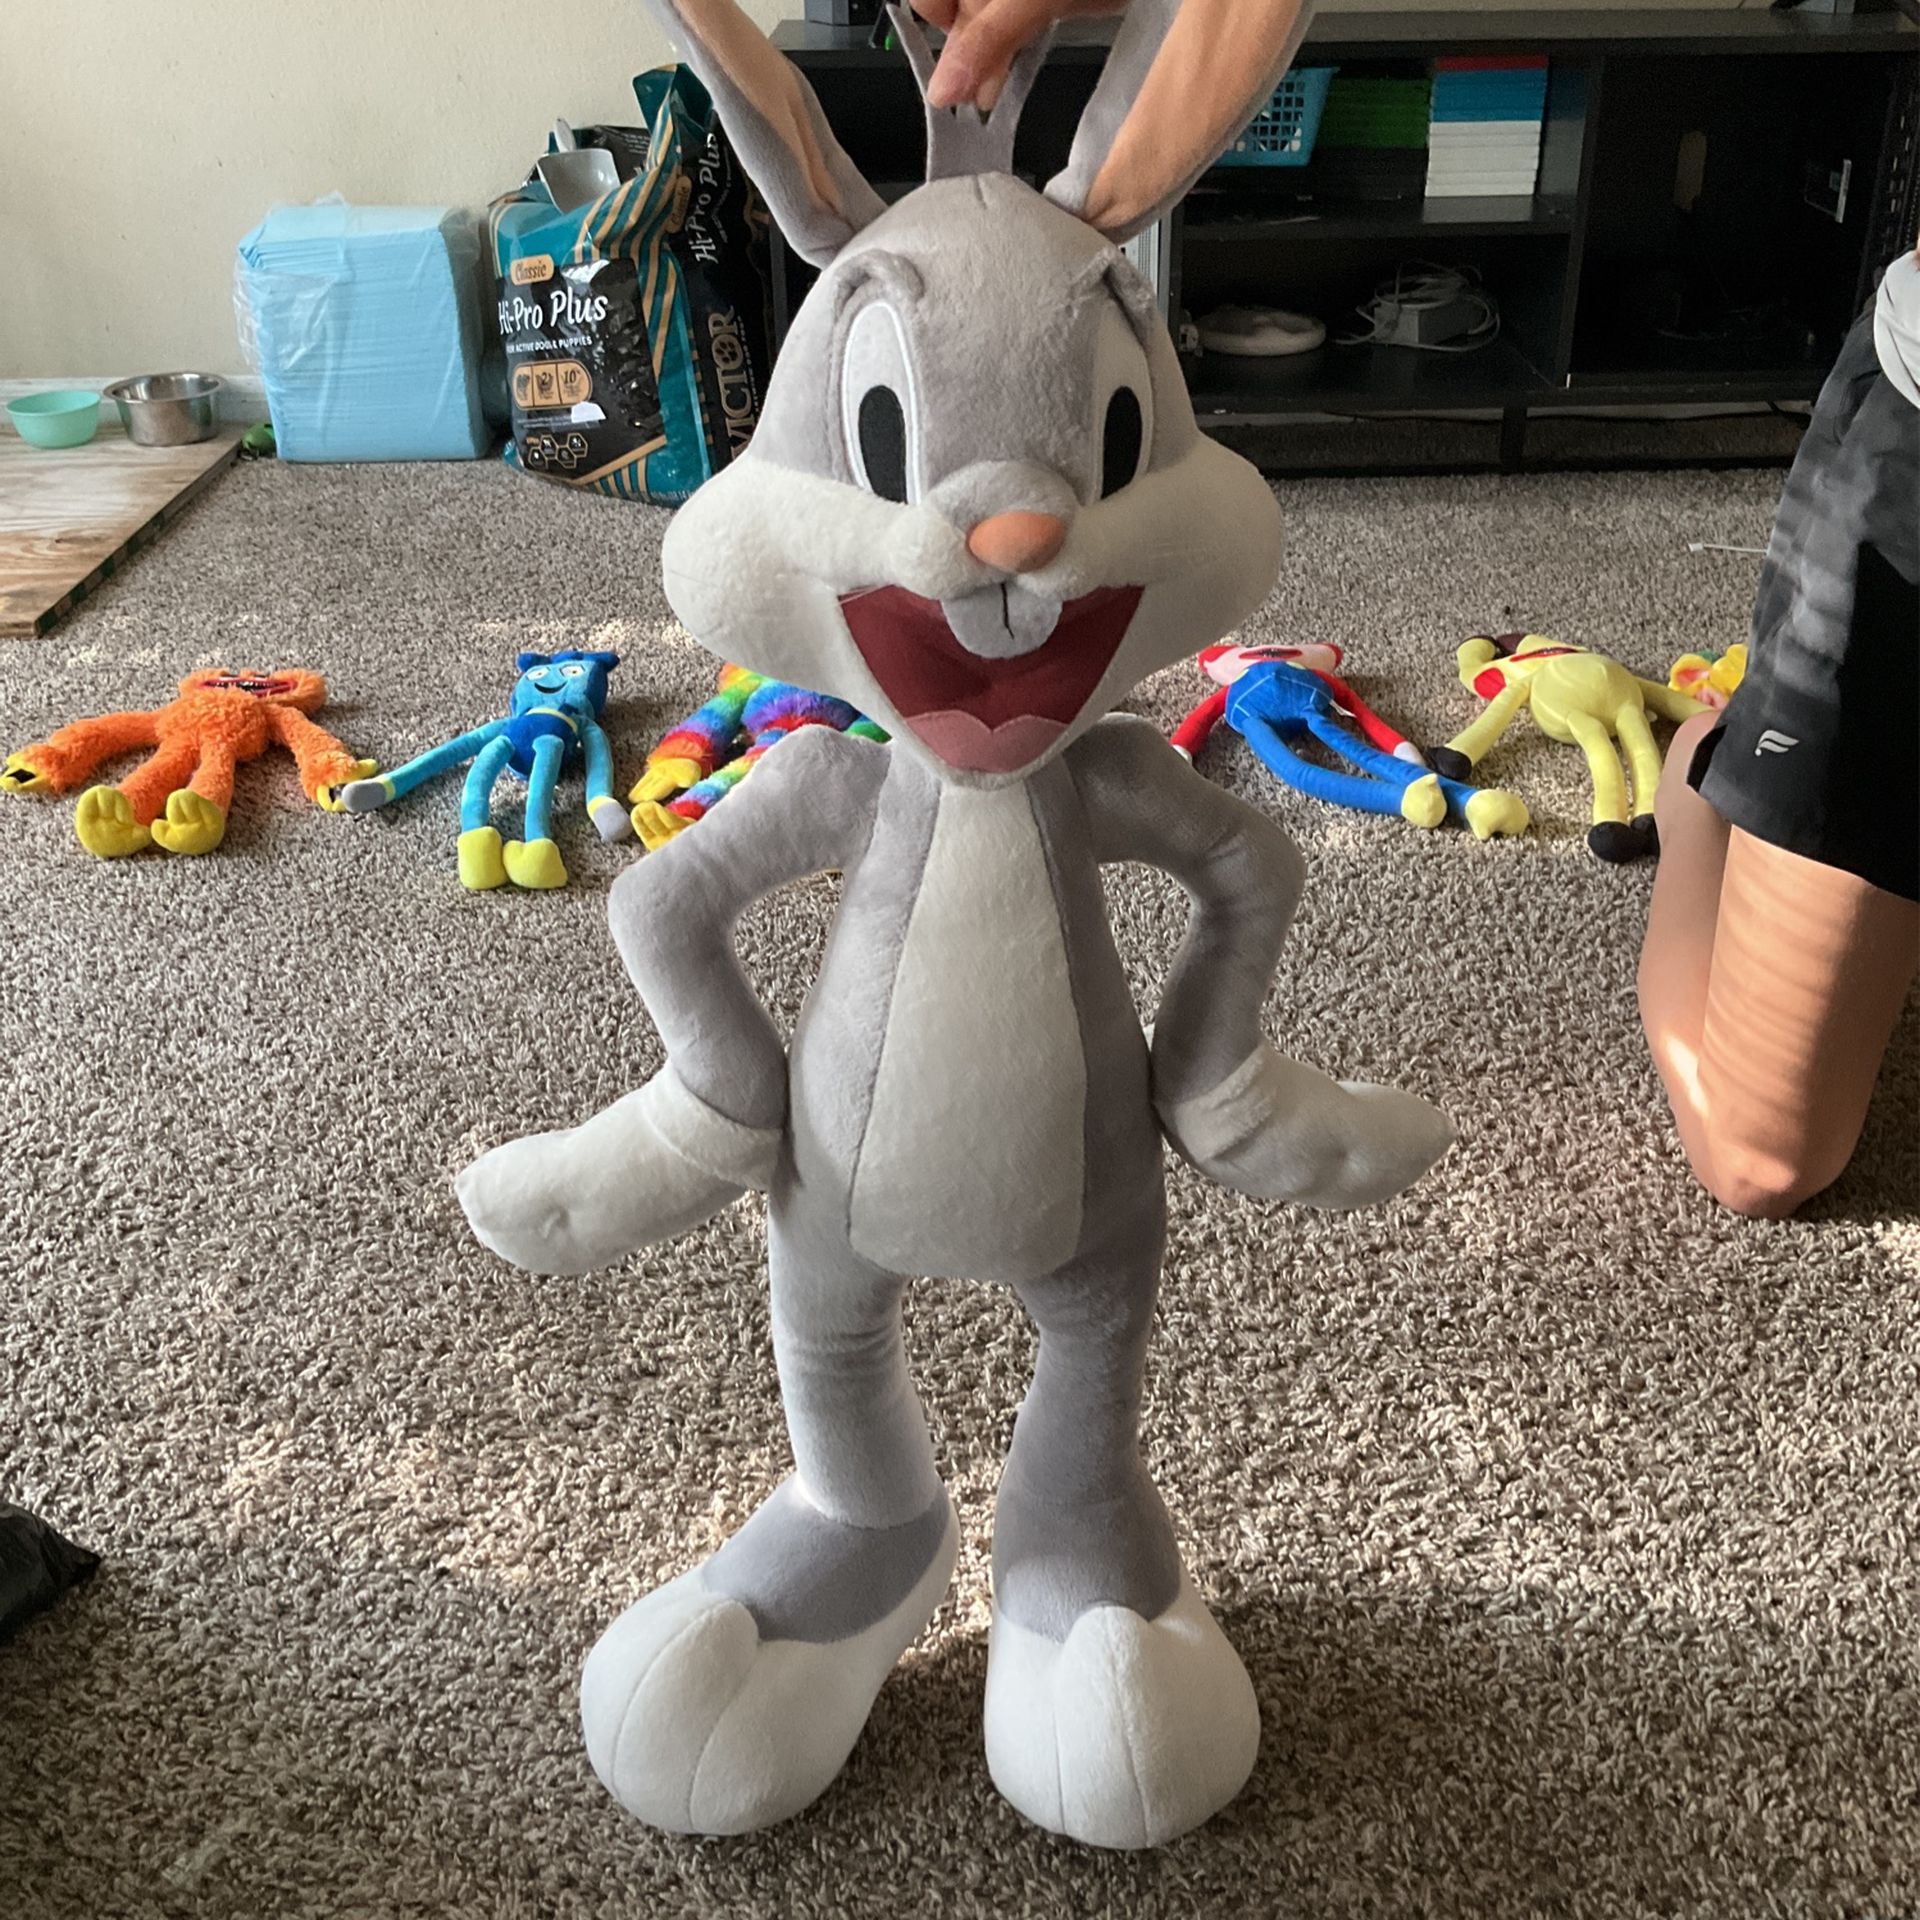 Bugs Bunny Stuffed Animal Six Flags